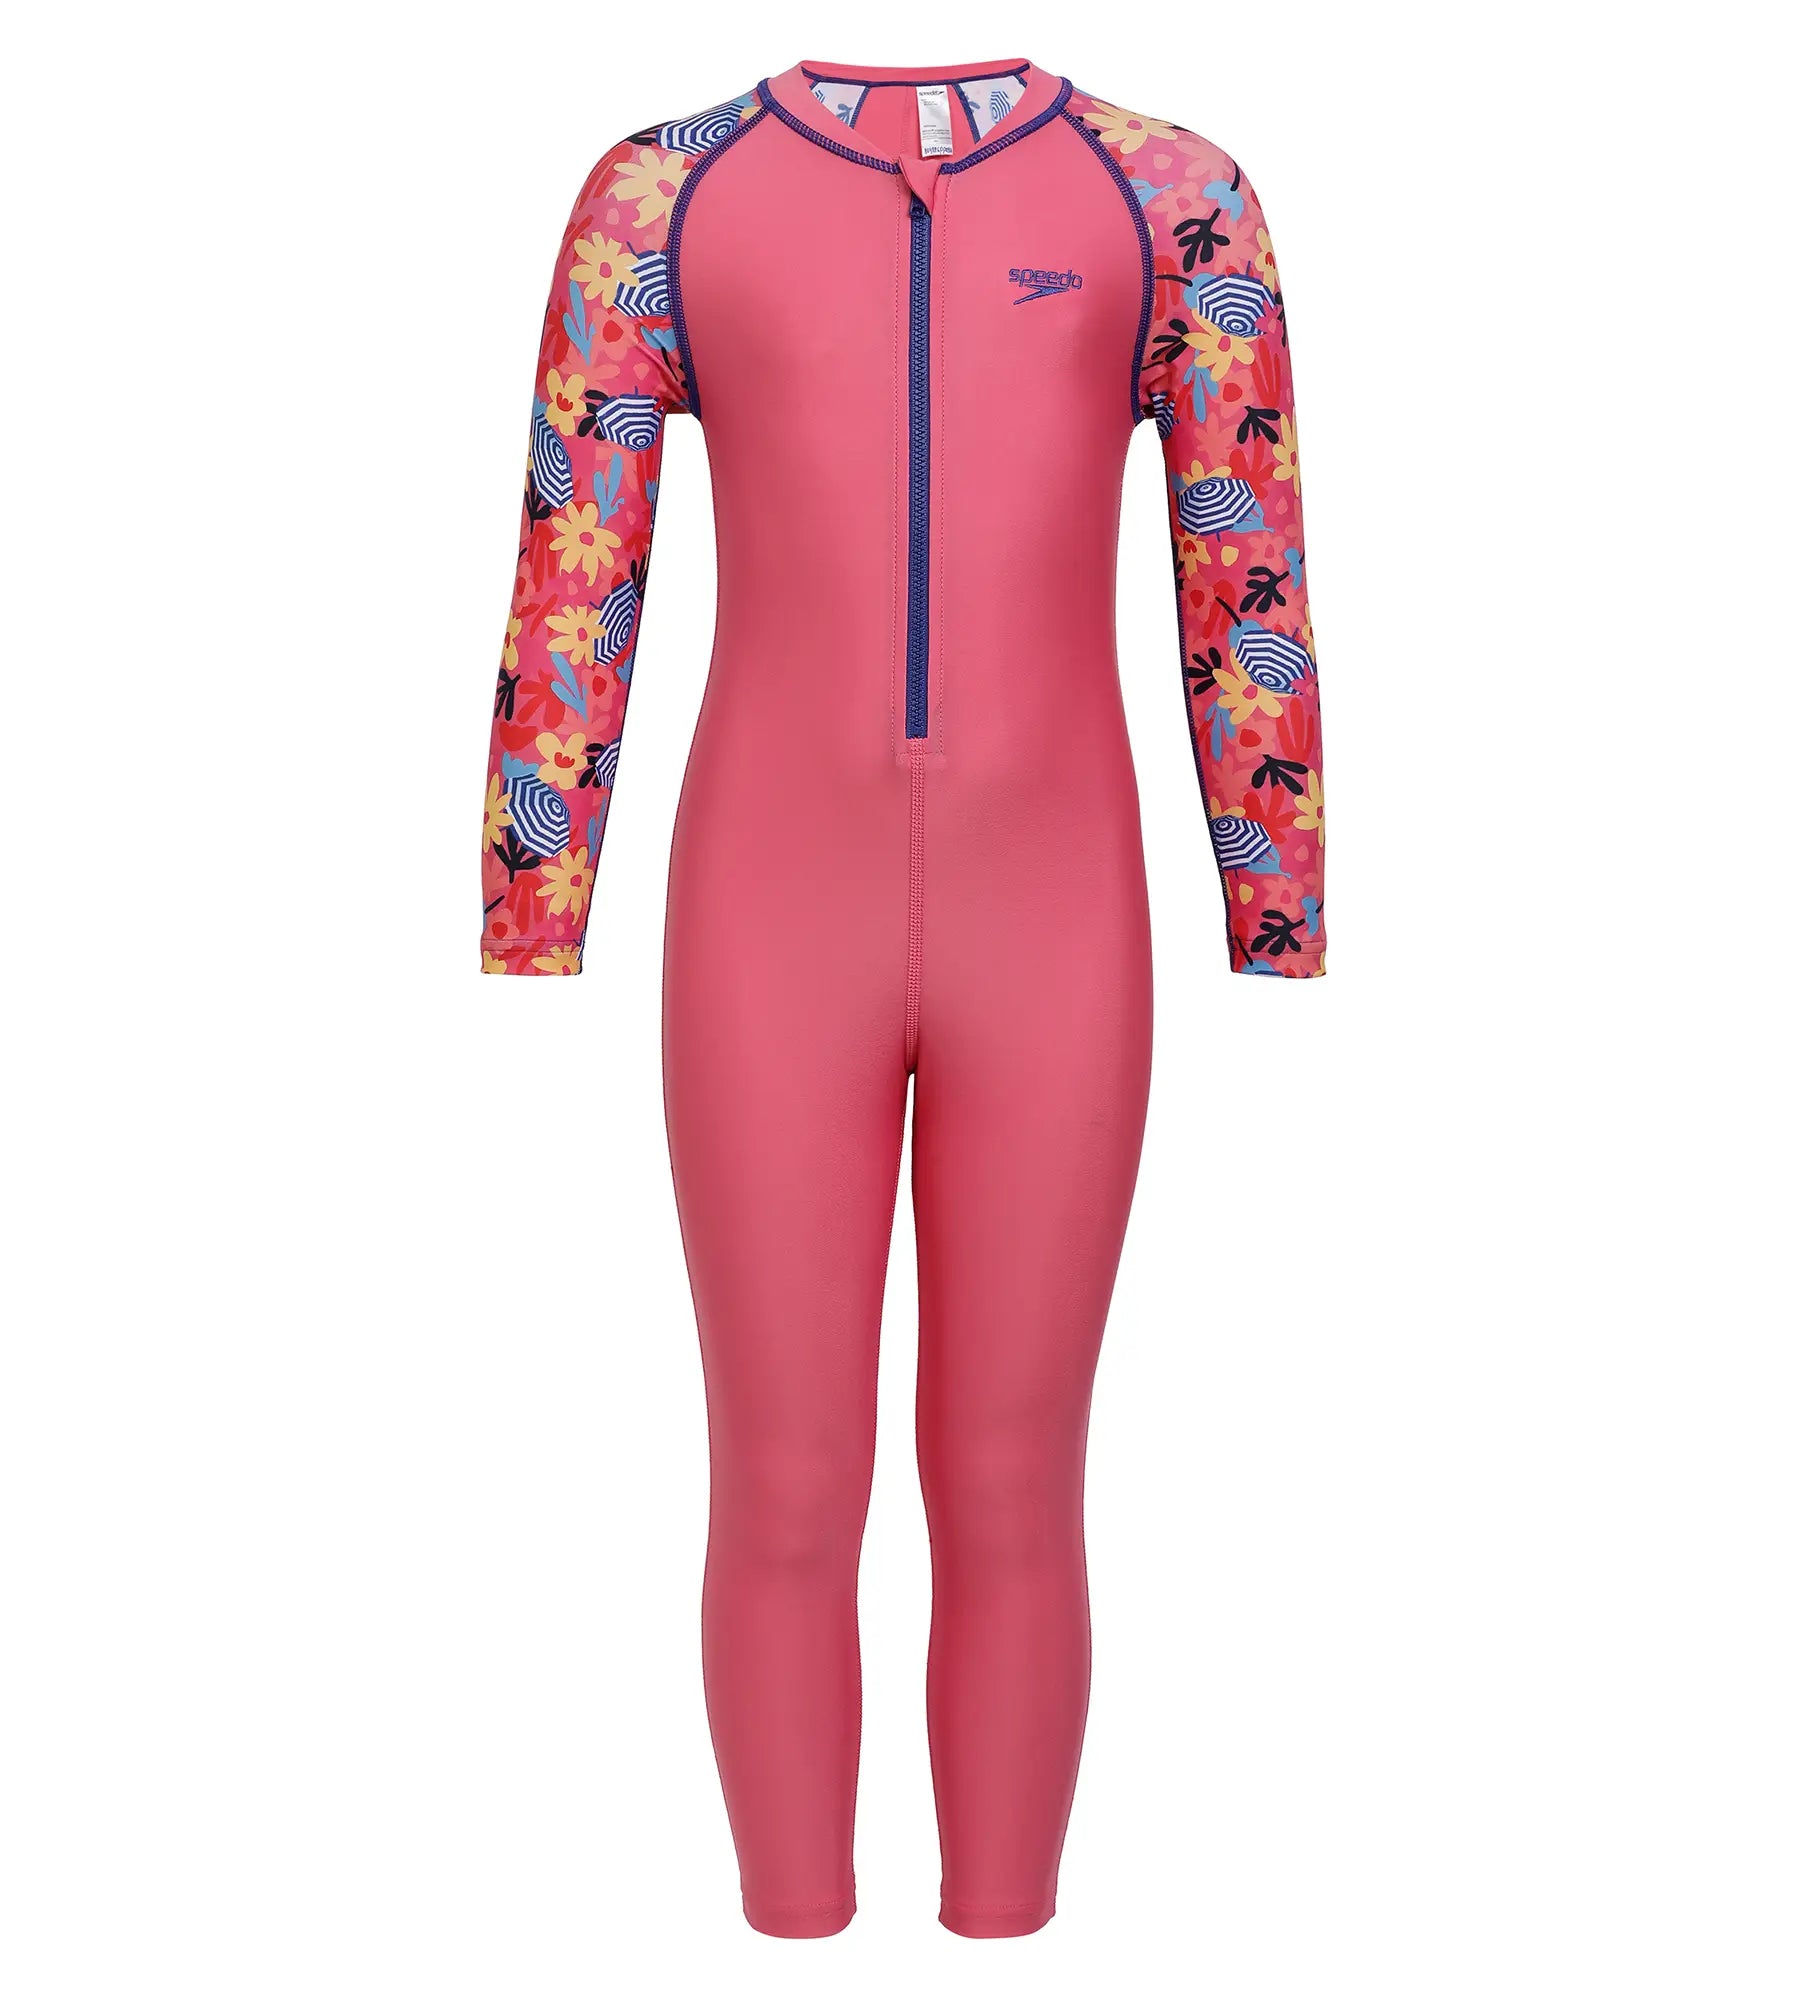 Girl's All In One Full Body Suit Swimwear Suit Swimwear - Fandango Pink & Bloominous_1